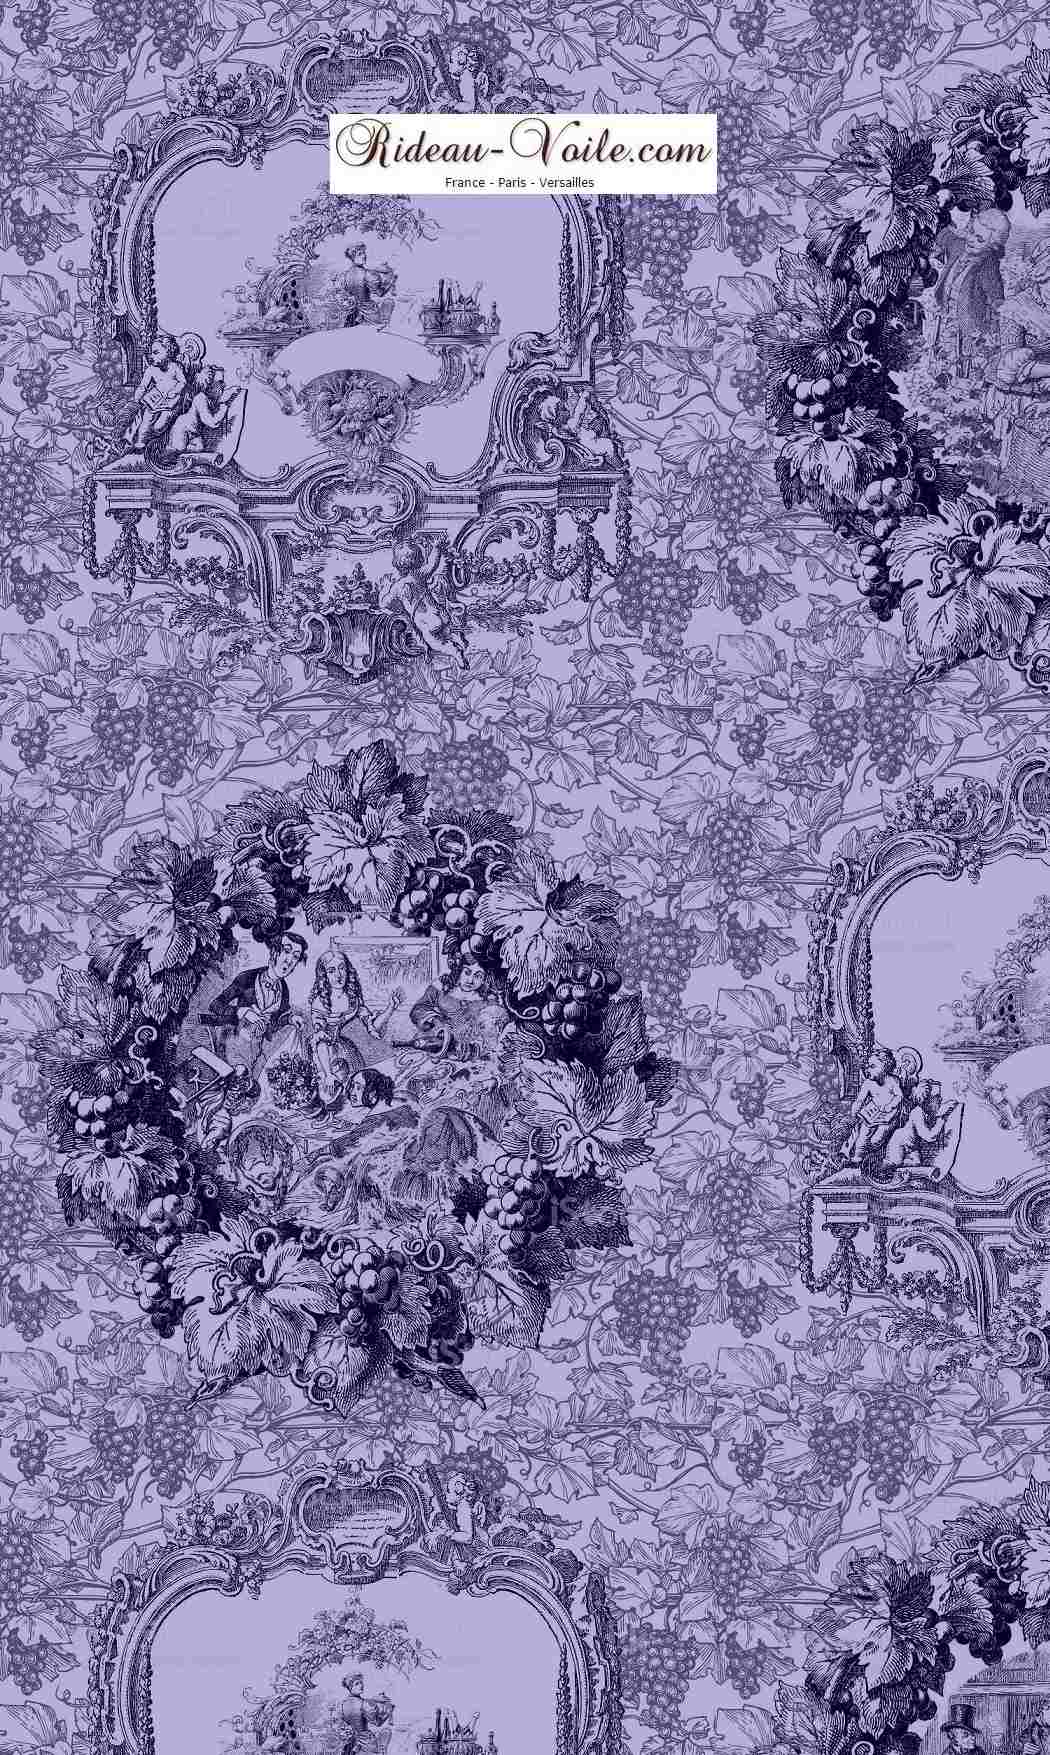 Tissu imprimé bleu Toile de Jouy violet Tissu au mètre comment acheter trouver boutique Paris toile de jouy  pour décoration, agencement,  haut gamme sur mesure. Papier peint, luminaire, abat-jour, rideau, couette et coussin. ignifugé, occultant, Versailles, Nice, Monaco.